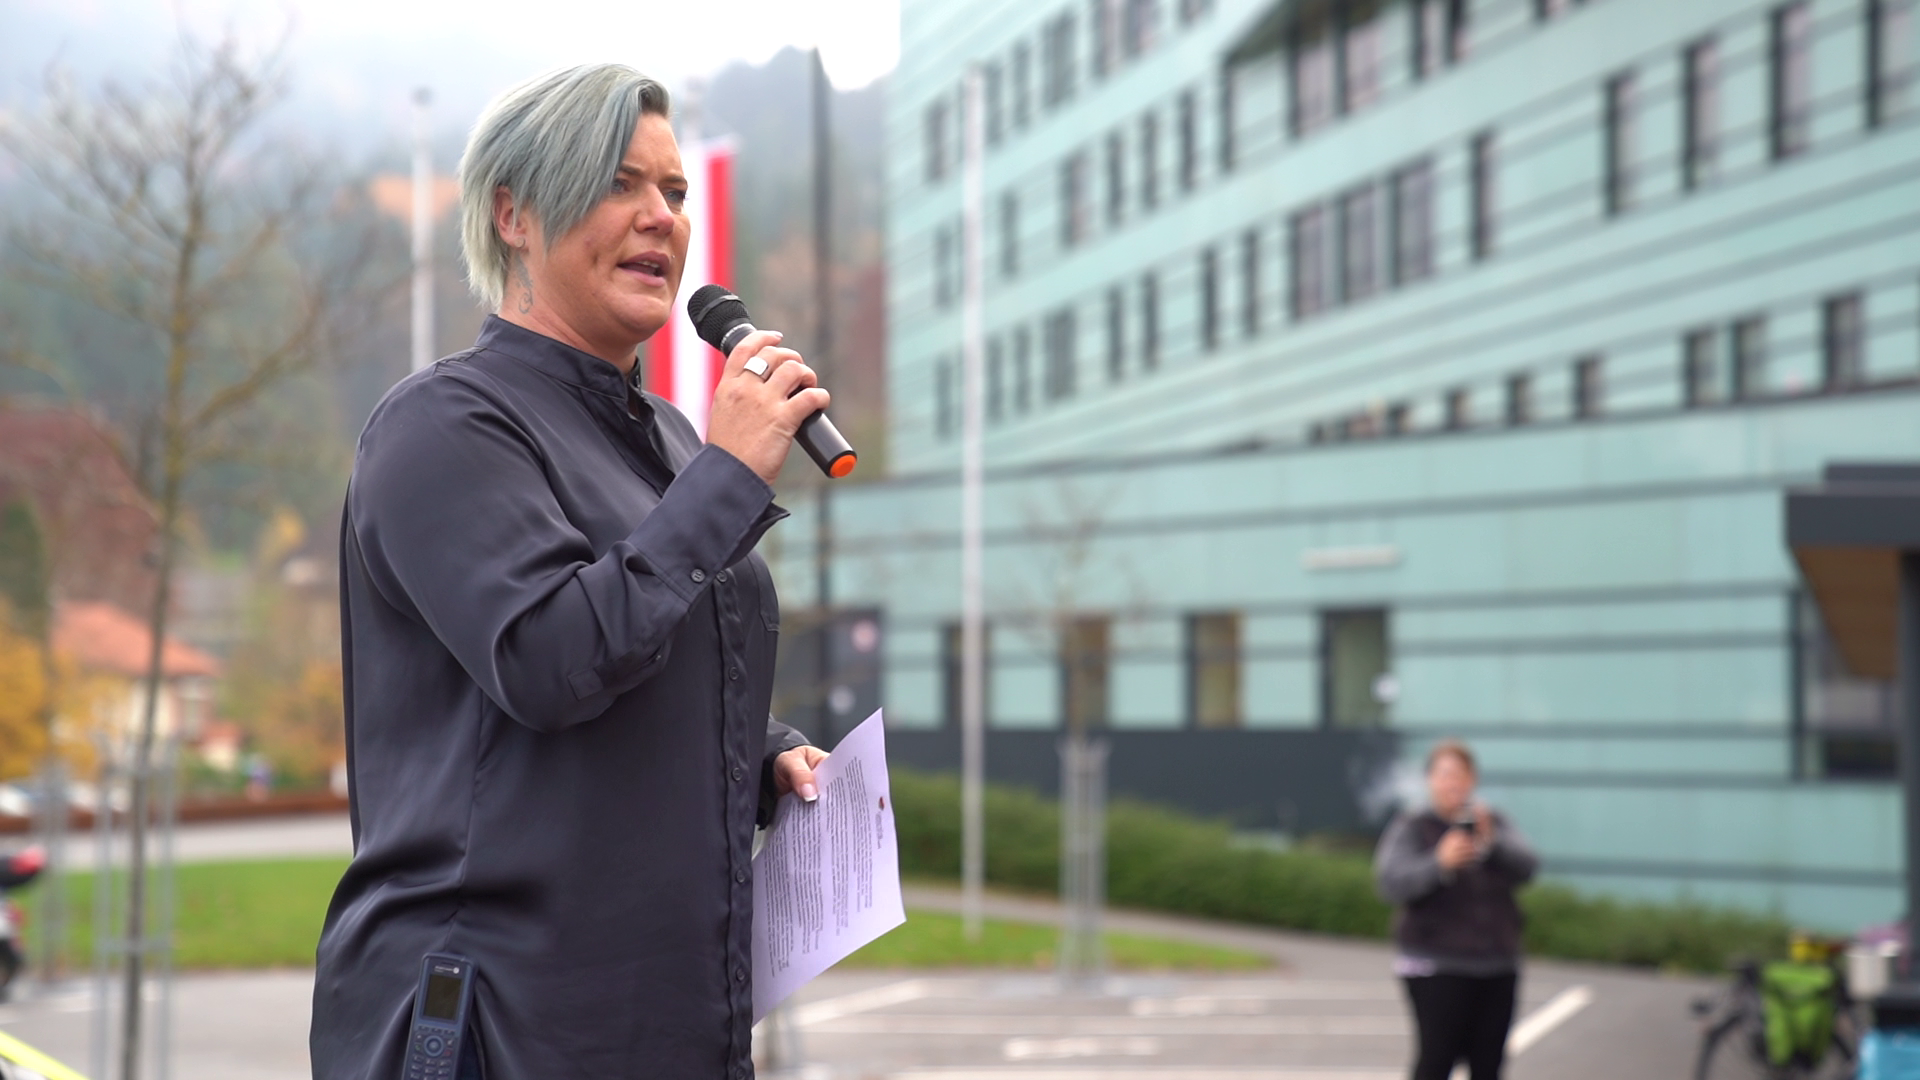 Patricia Zangerl: Patricia Zangerl arbeitet im Landeskrankenhaus Bregenz und wurde vom ORF als Lebensretterin 2021 ausgezeichnet